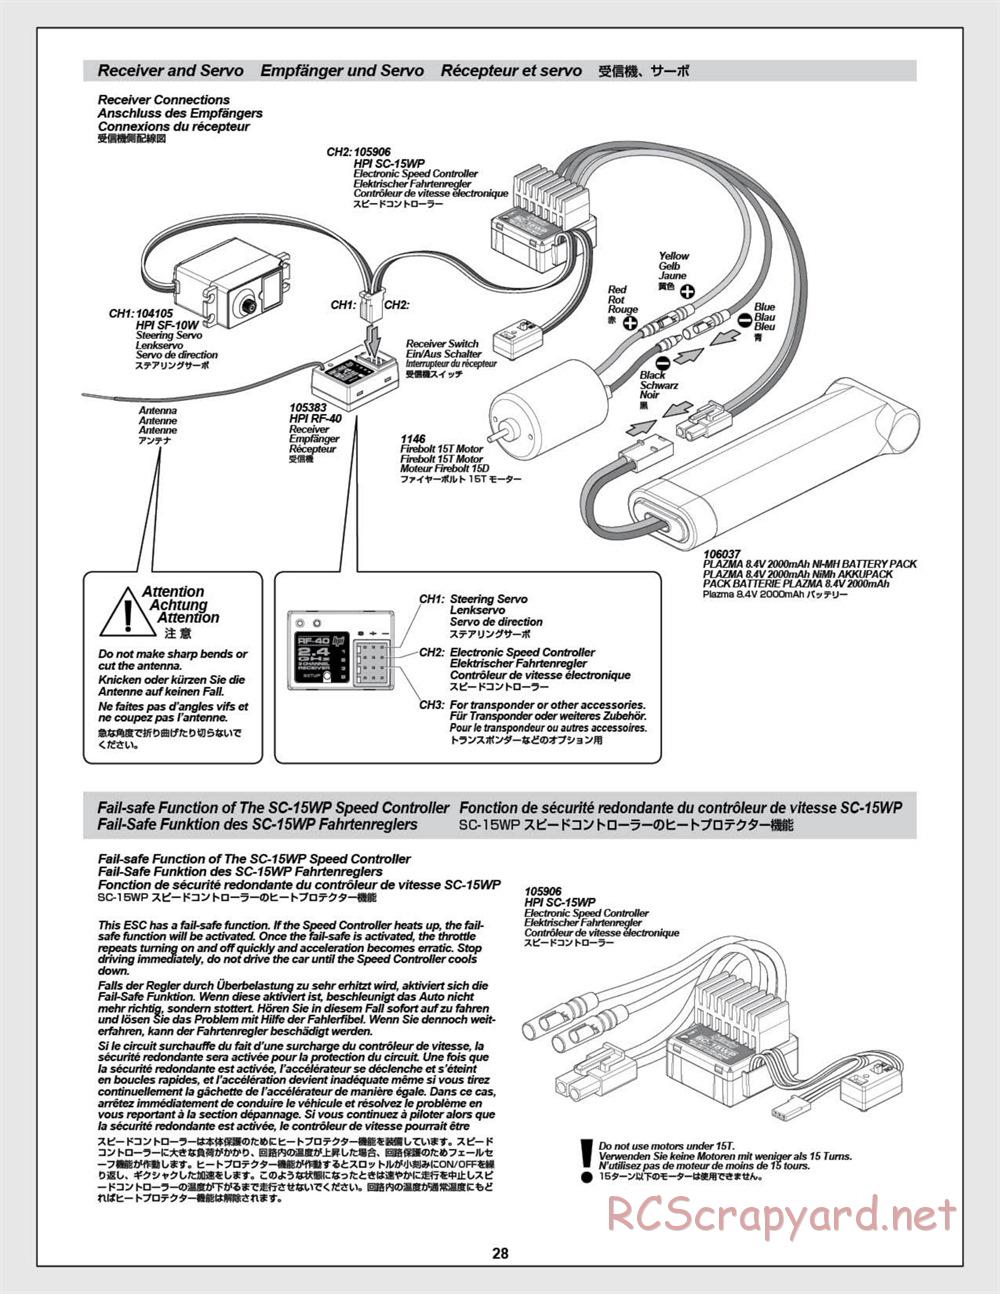 HPI - E-Firestorm-10T - Manual - Page 28